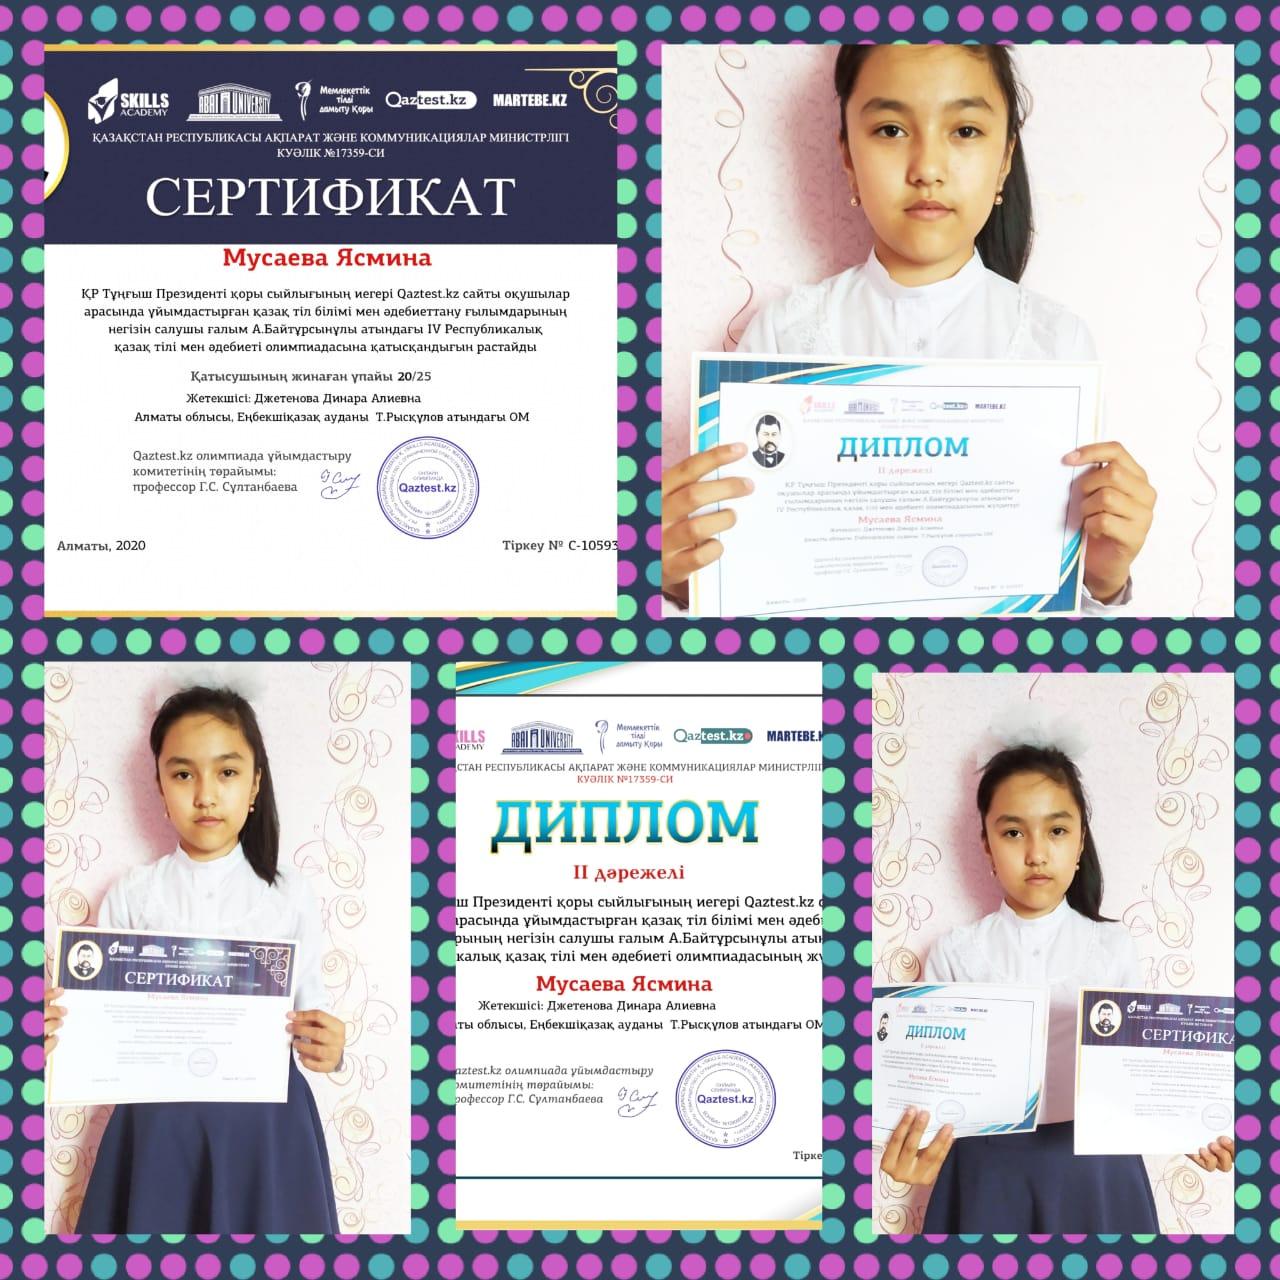 Мусаева Ясмина ученица 5Б класса: участвовала на онлайн олимпиаде по казахскому языку,